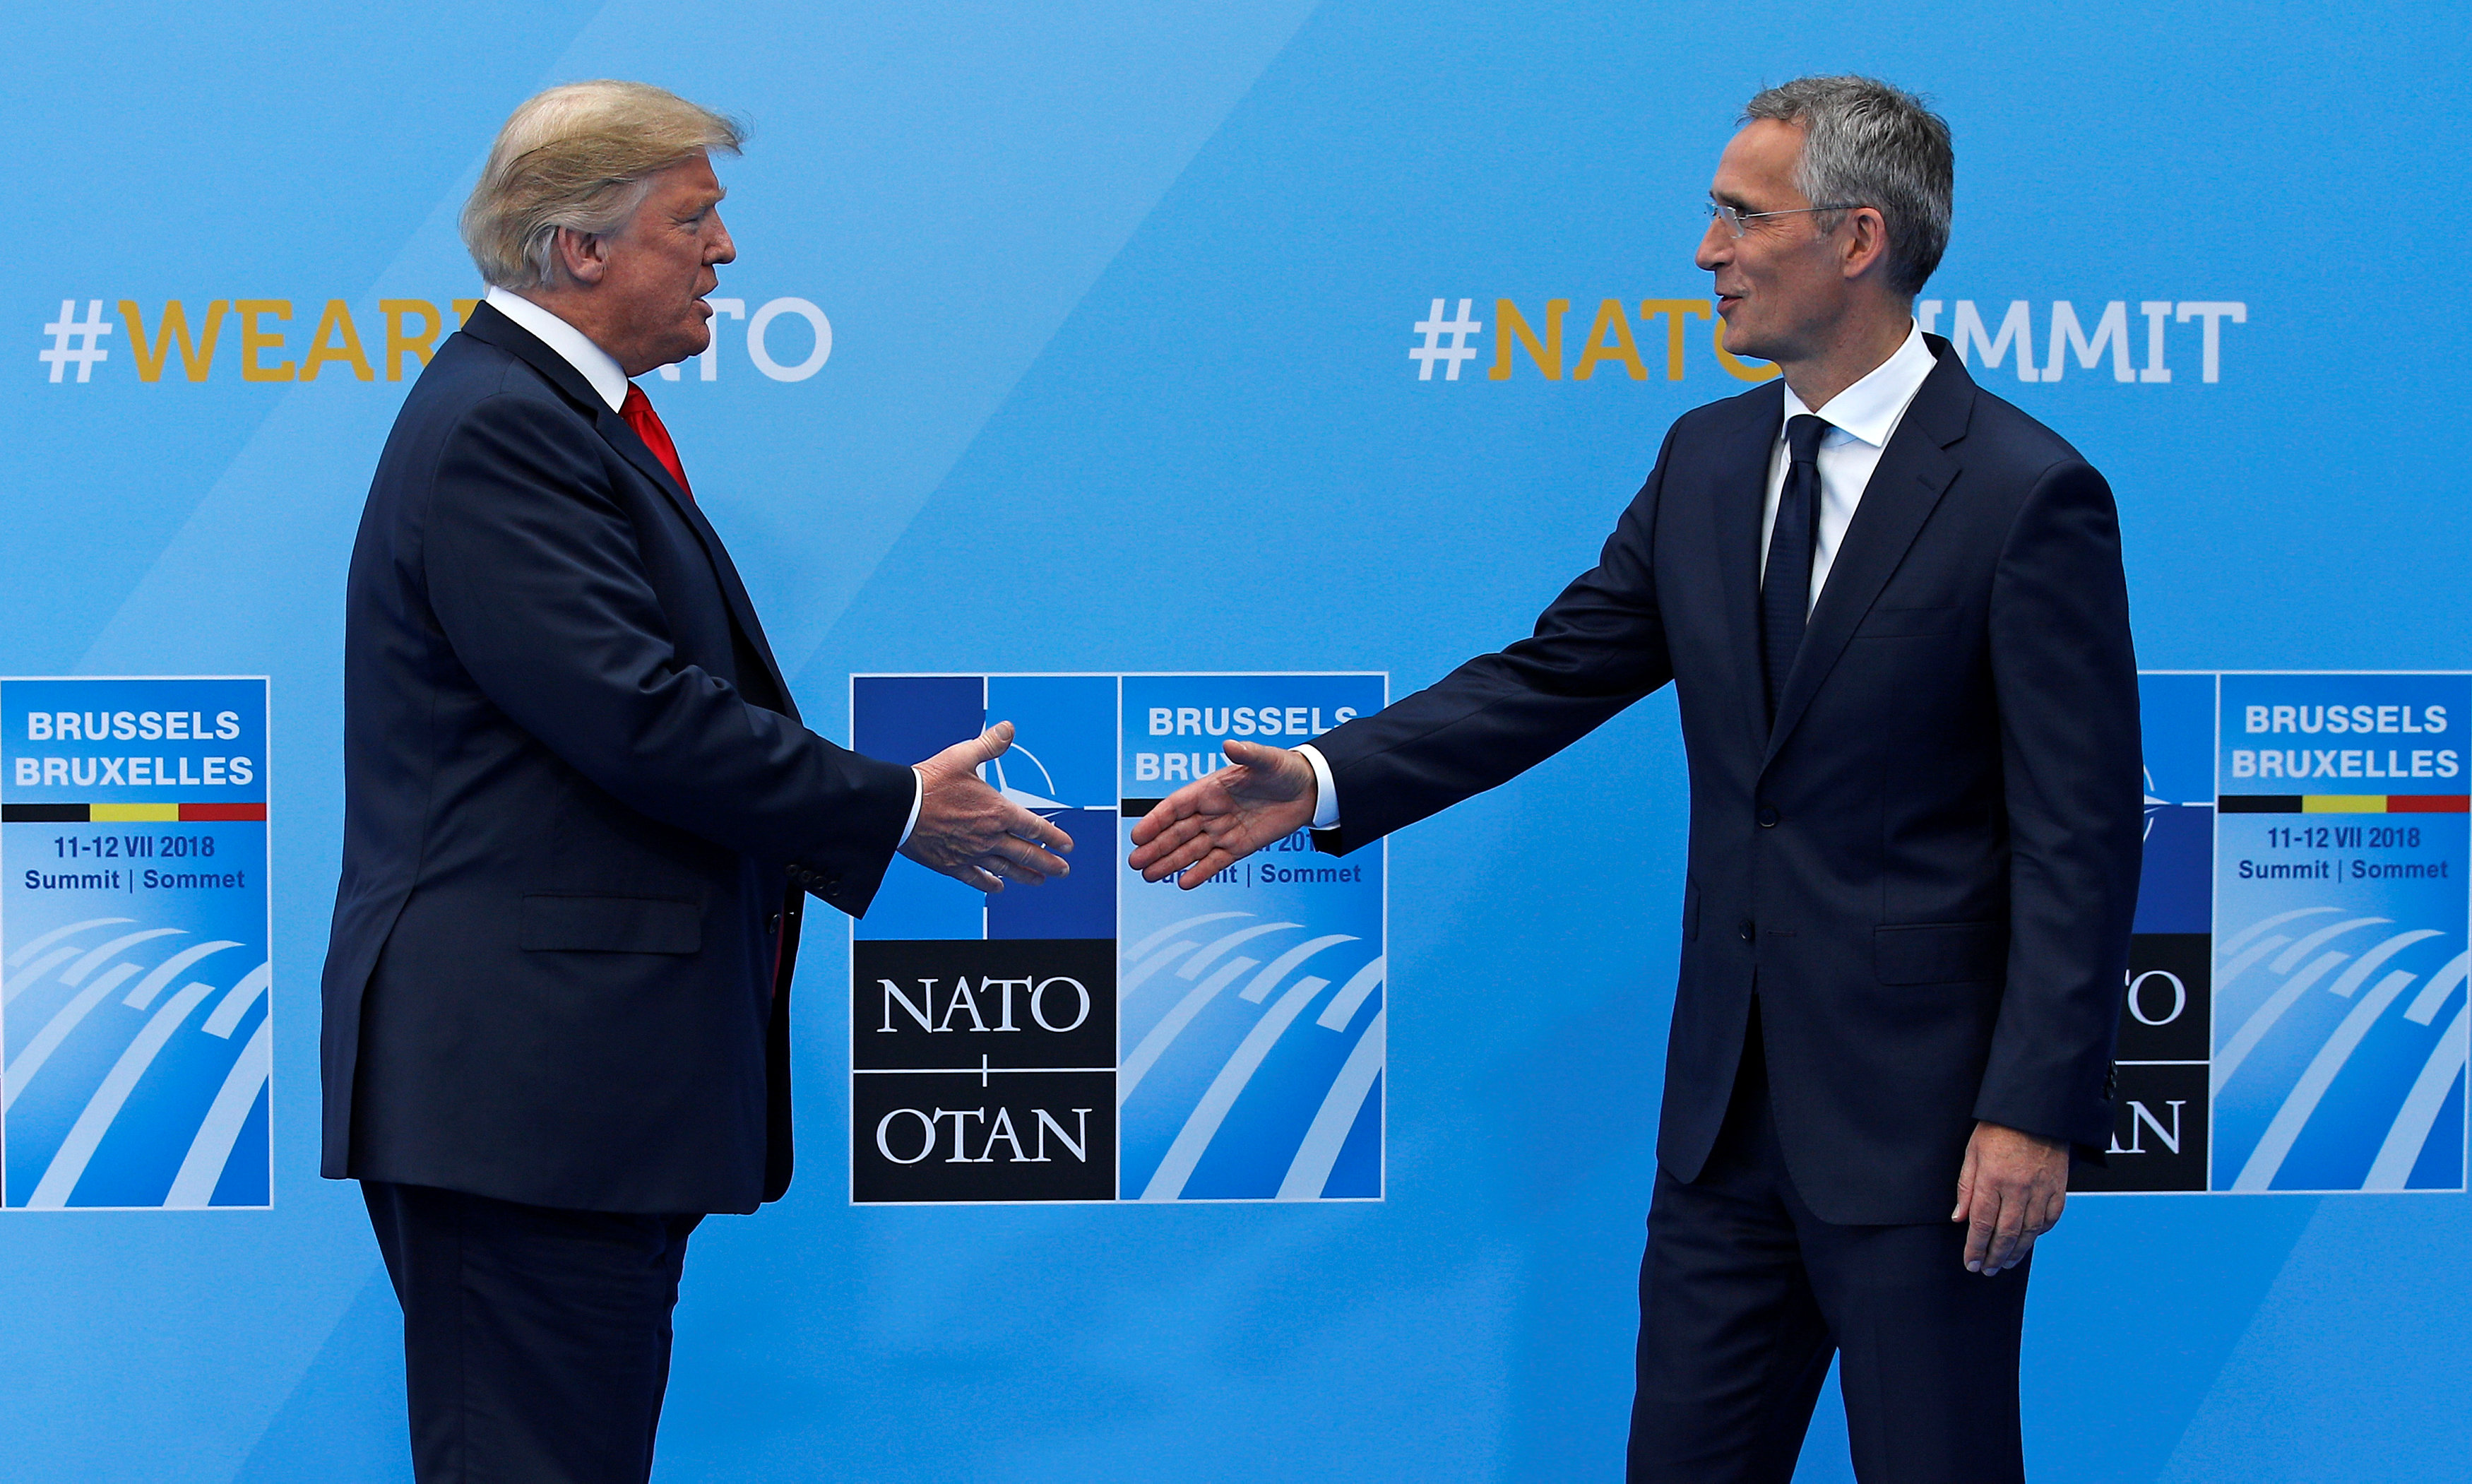 ترامب مصافحا أمين عام الناتو